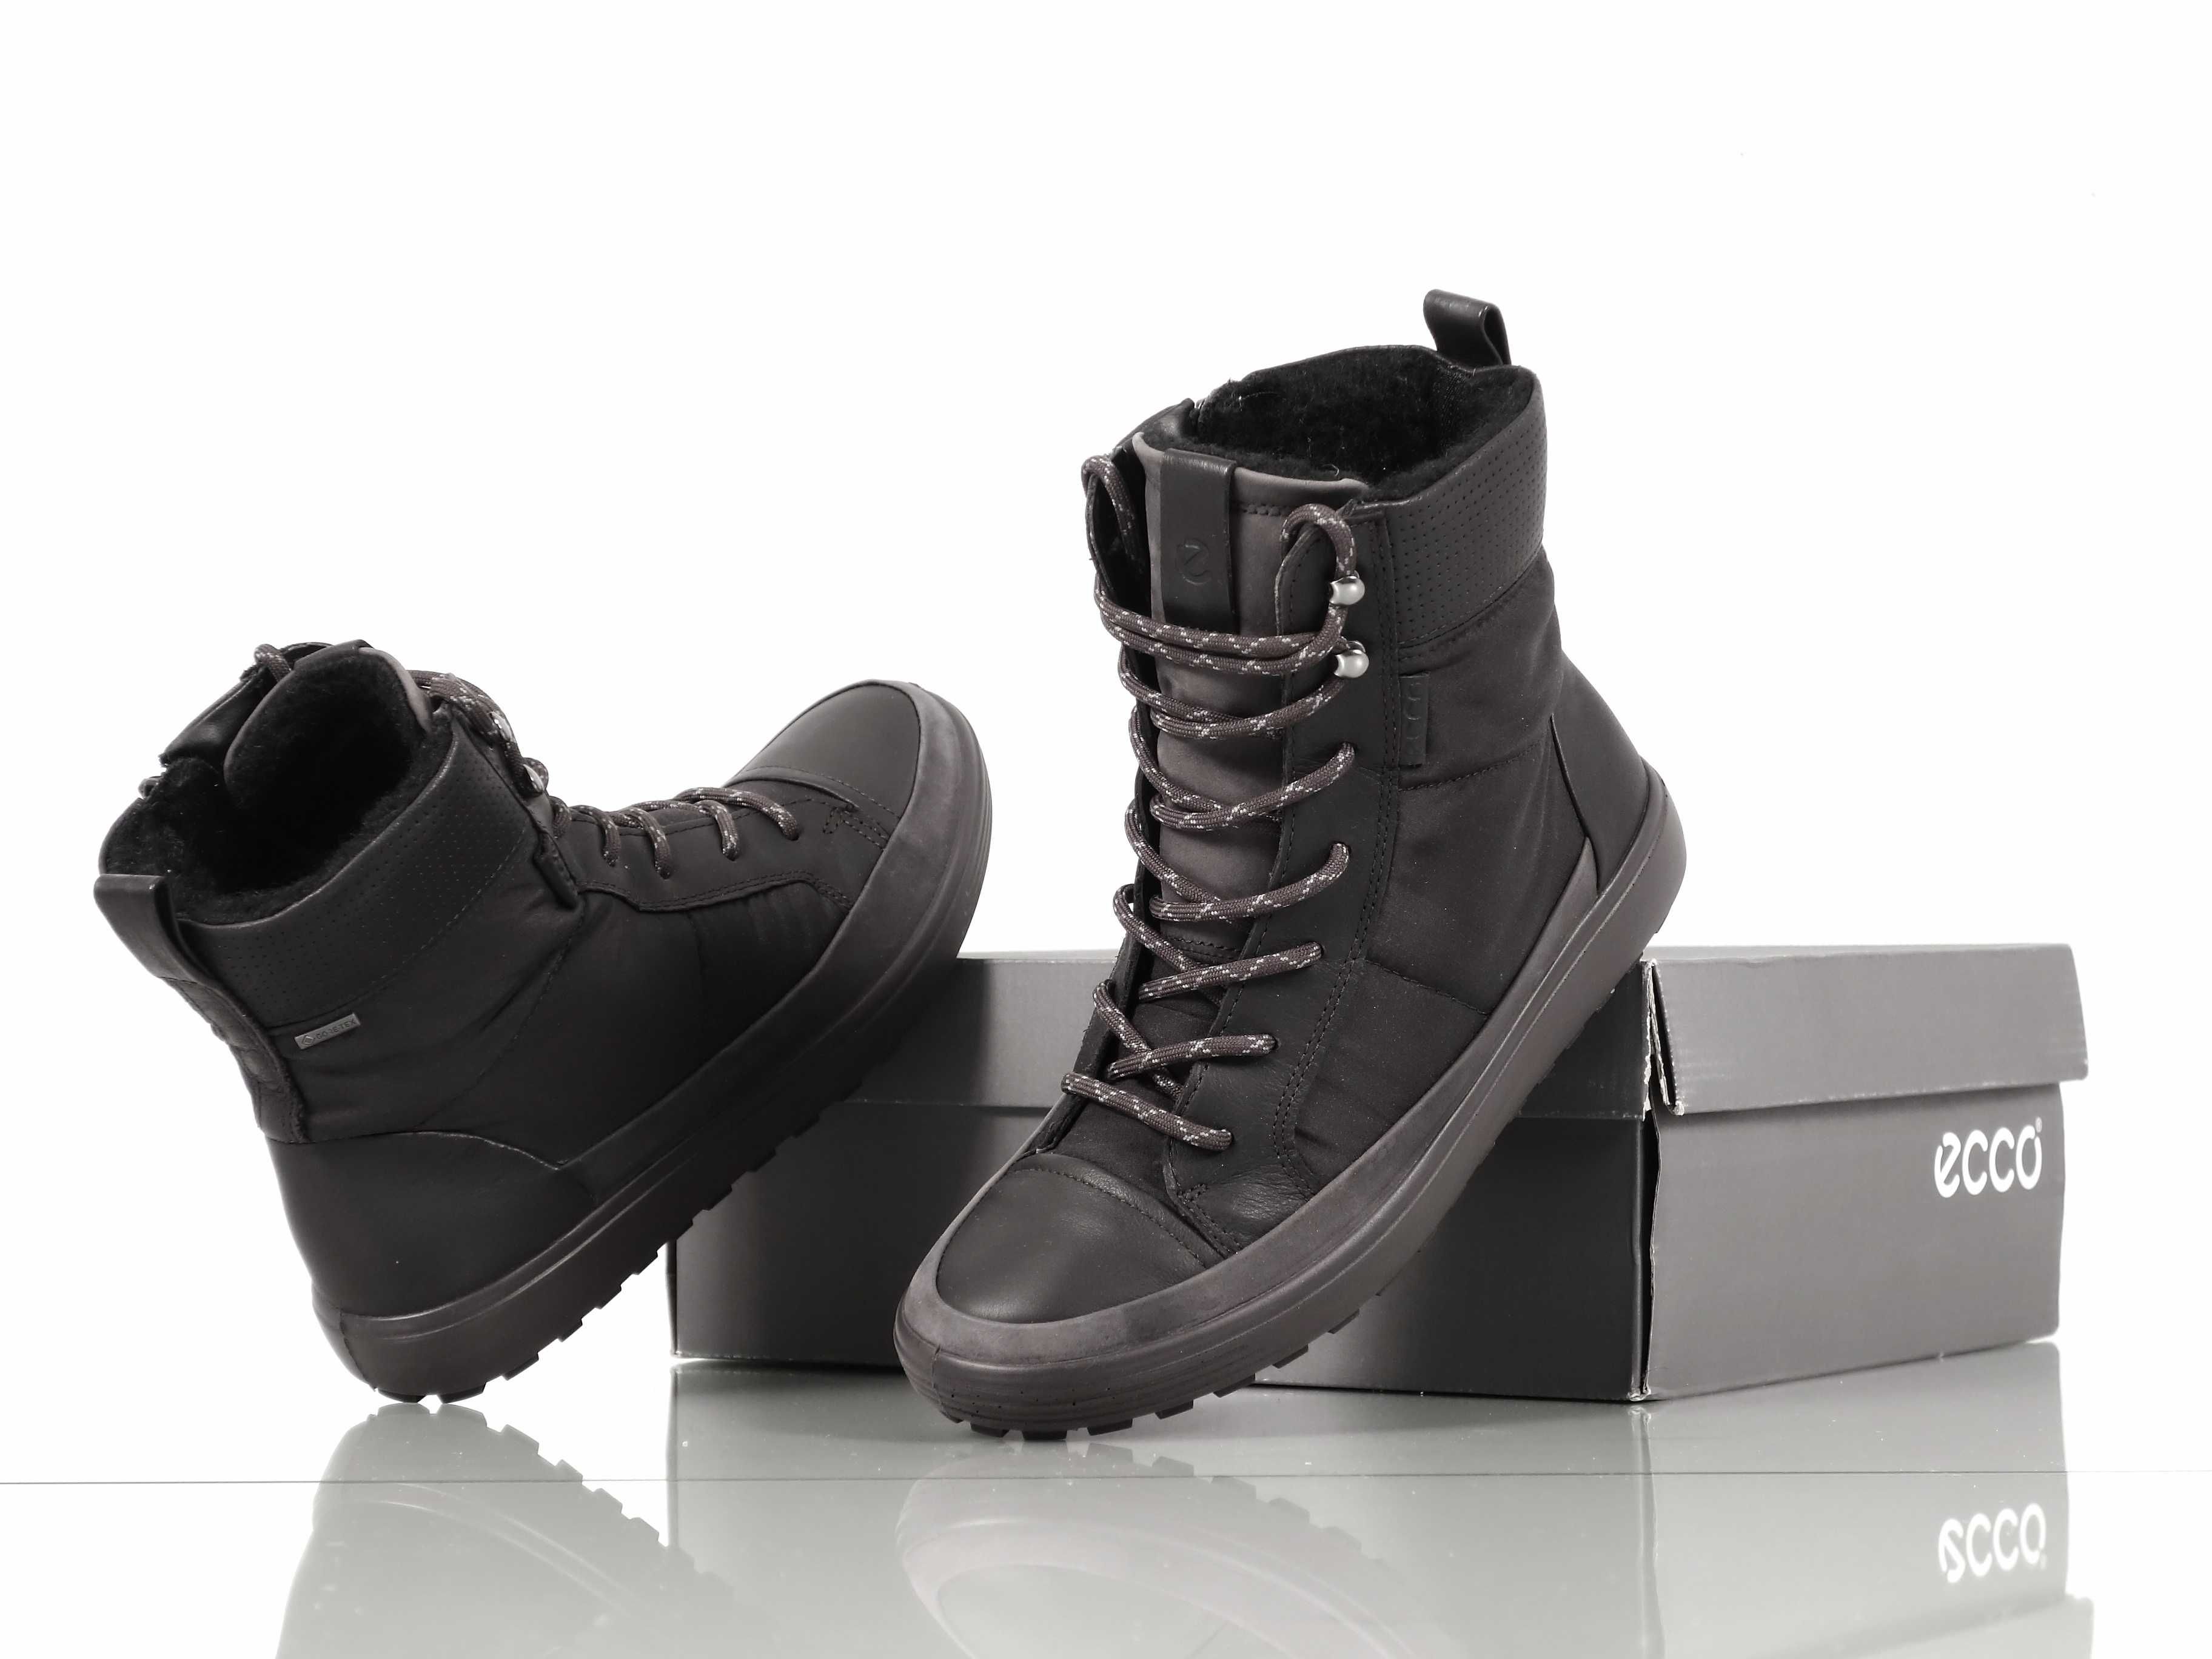 ECCO SOFT 7 TRED Gore-tex nowe botki sznurowane buty damskie 38 Brzesko •  OLX.pl